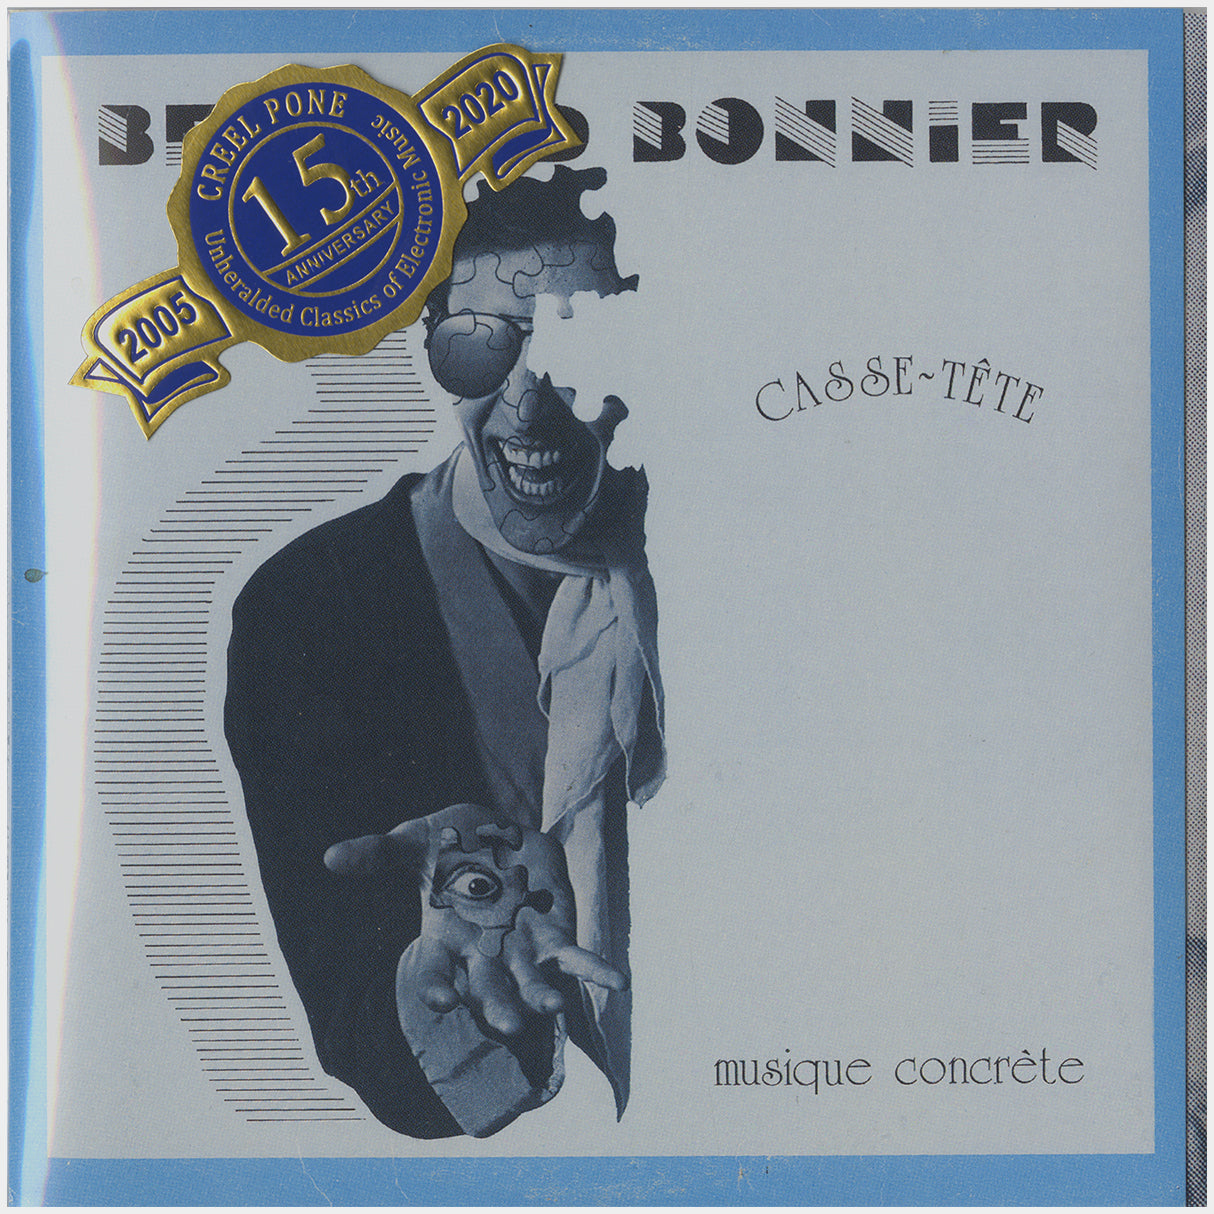 [CP 049 CD] Bernard Bonnier; Casse-tête +